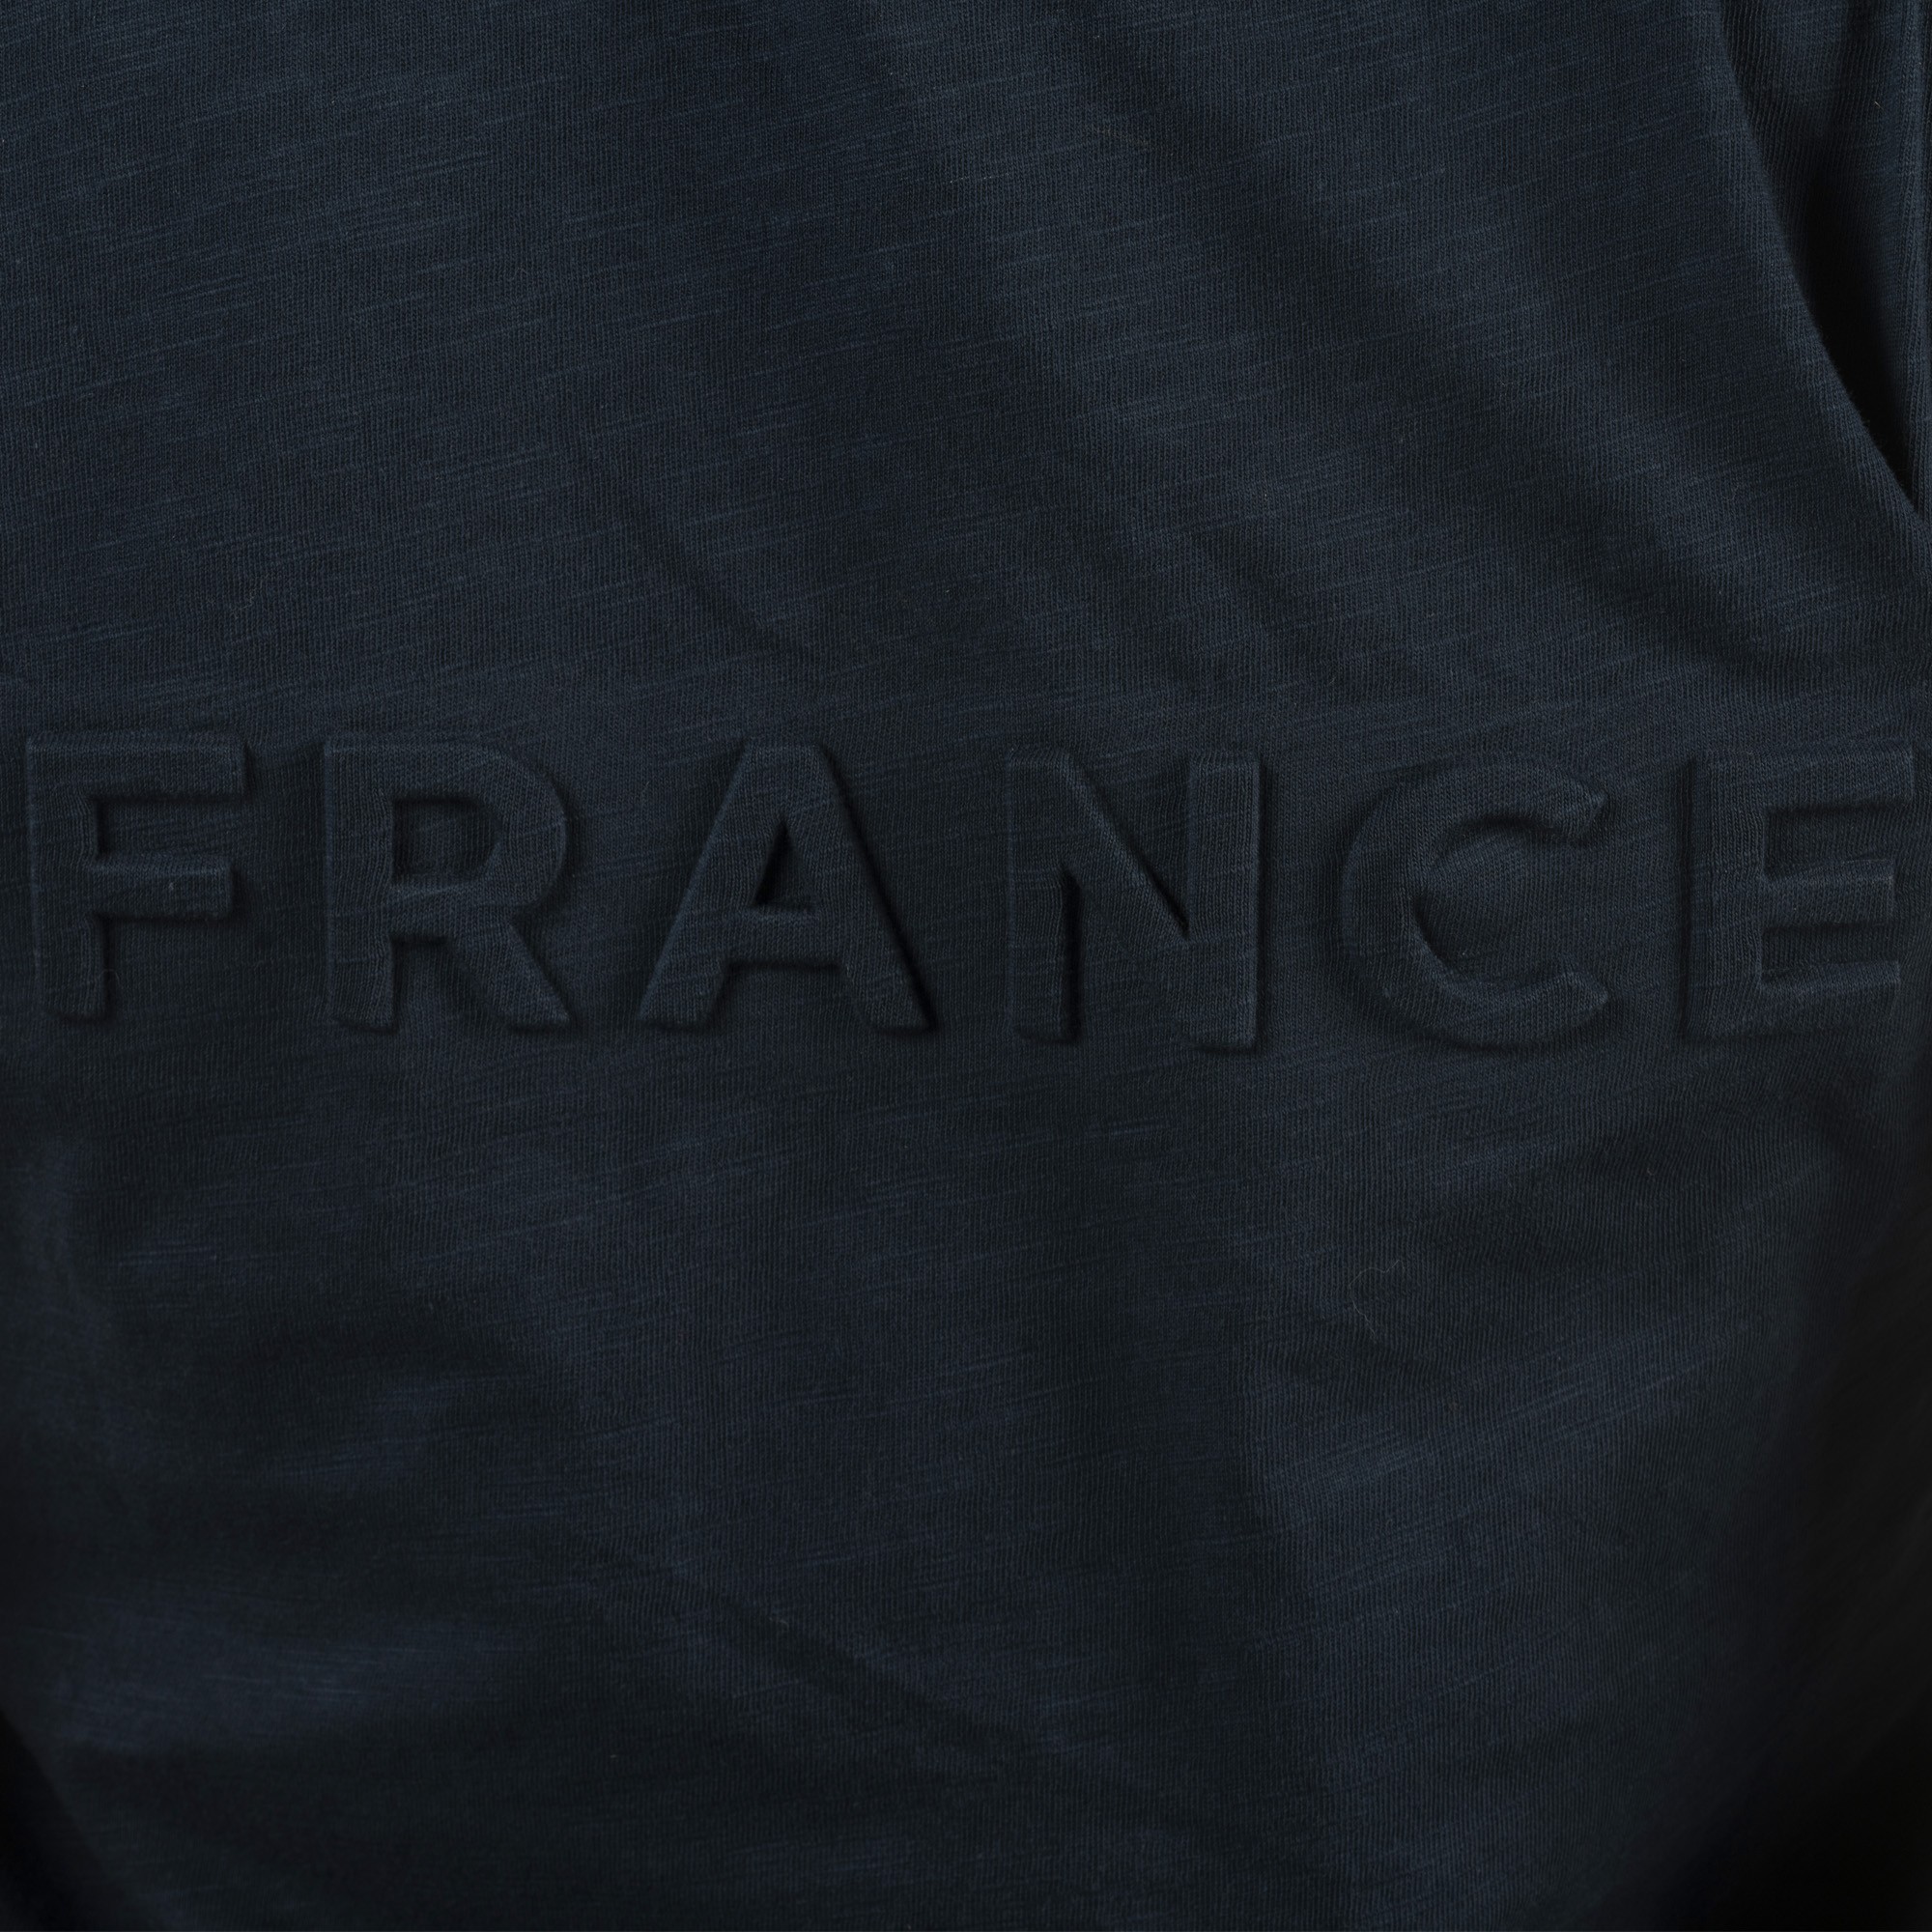 tee-shirt femme équitation flags and cup modèle france couleur marine